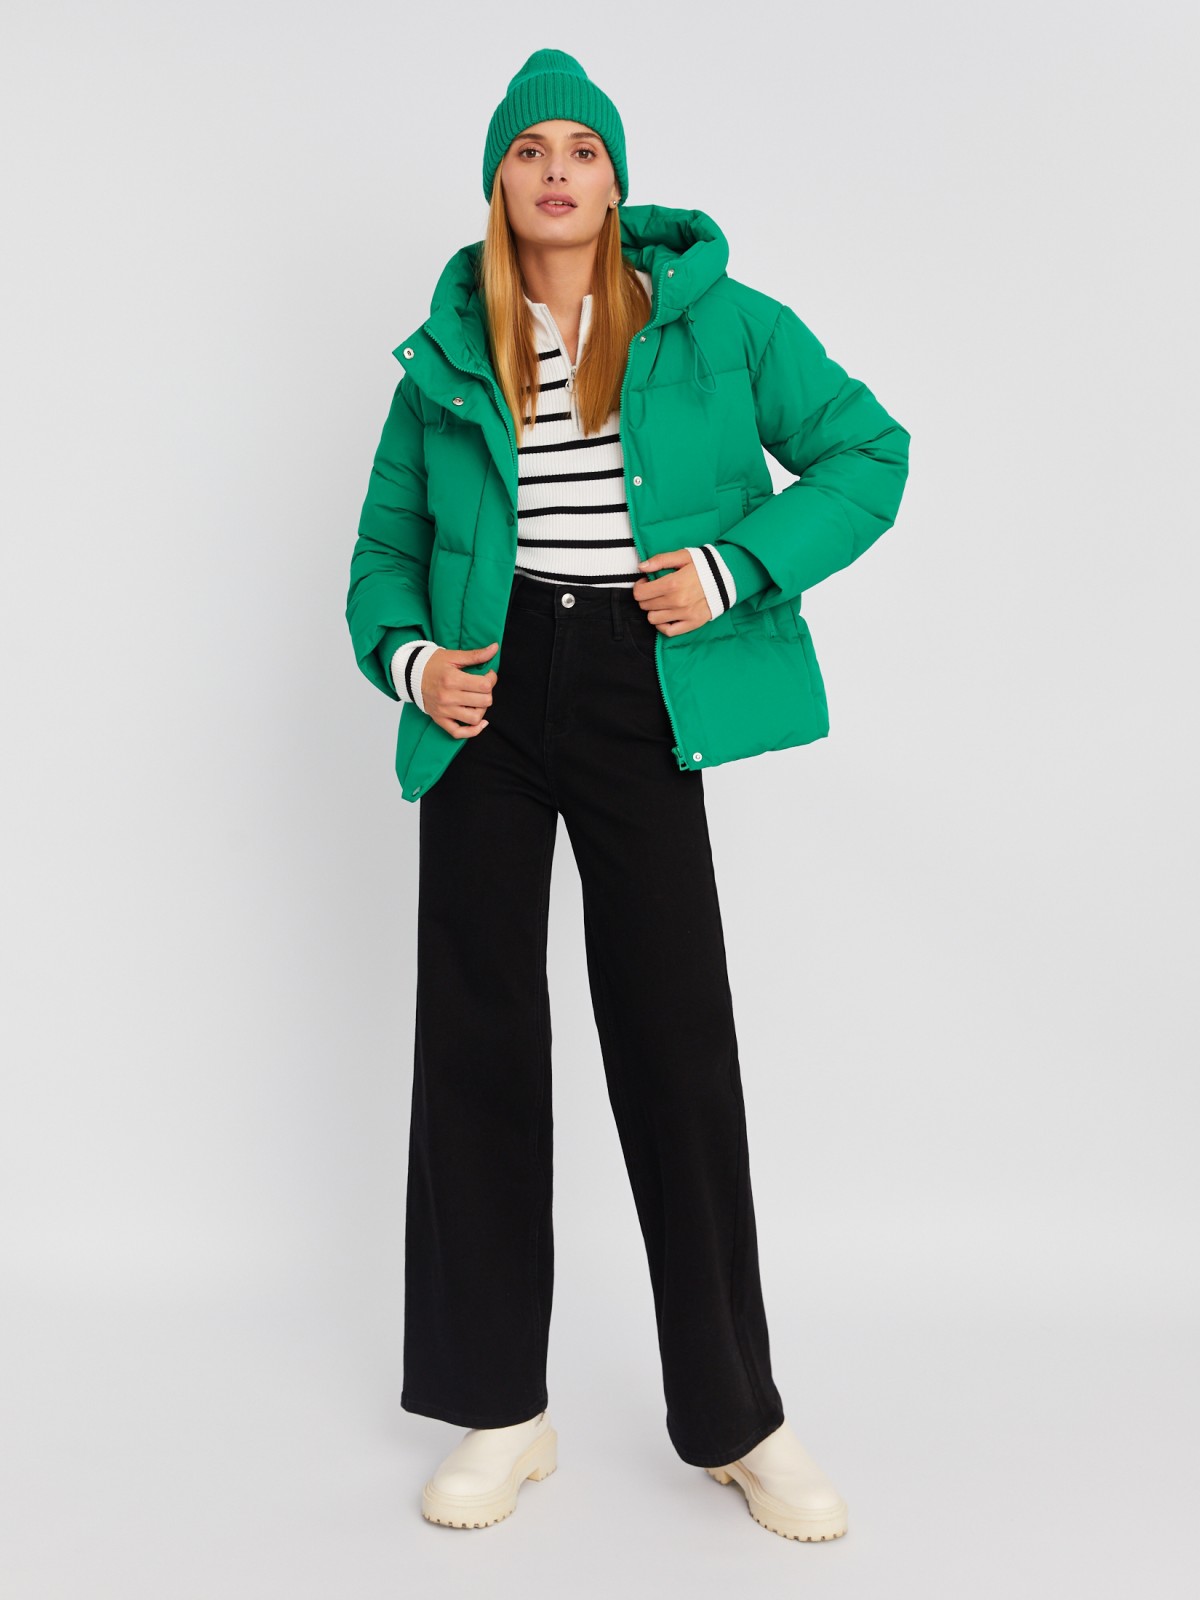 Тёплая стёганая куртка с капюшоном и удлинёнными внутренними манжетами zolla 023335112274, цвет зеленый, размер M - фото 2